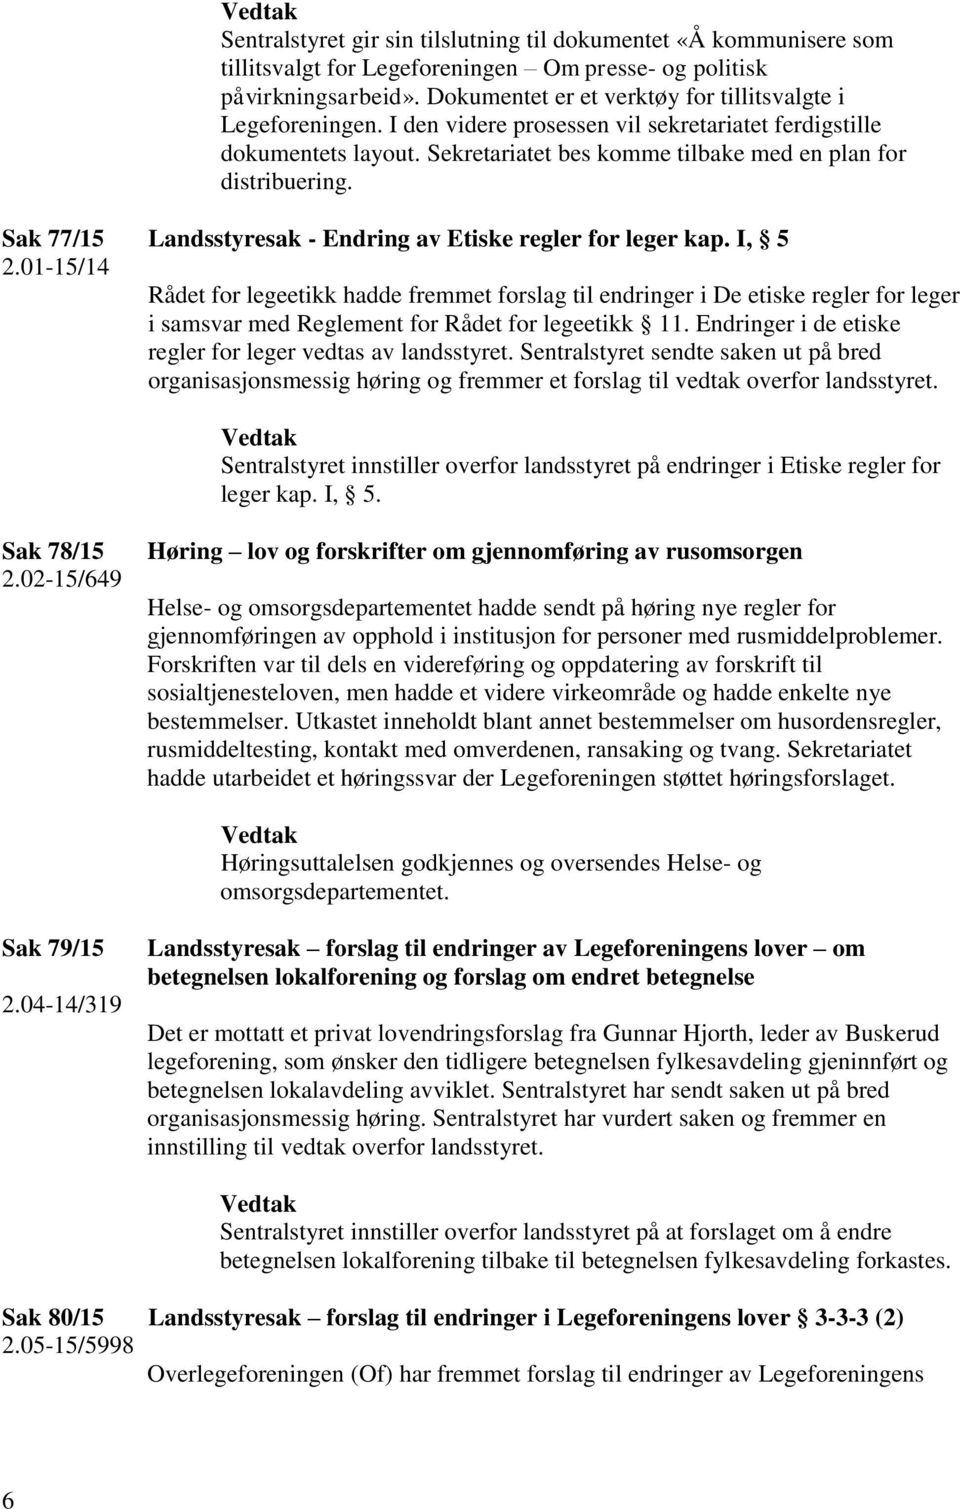 Sak 77/15 Landsstyresak - Endring av Etiske regler for leger kap. I, 5 2.